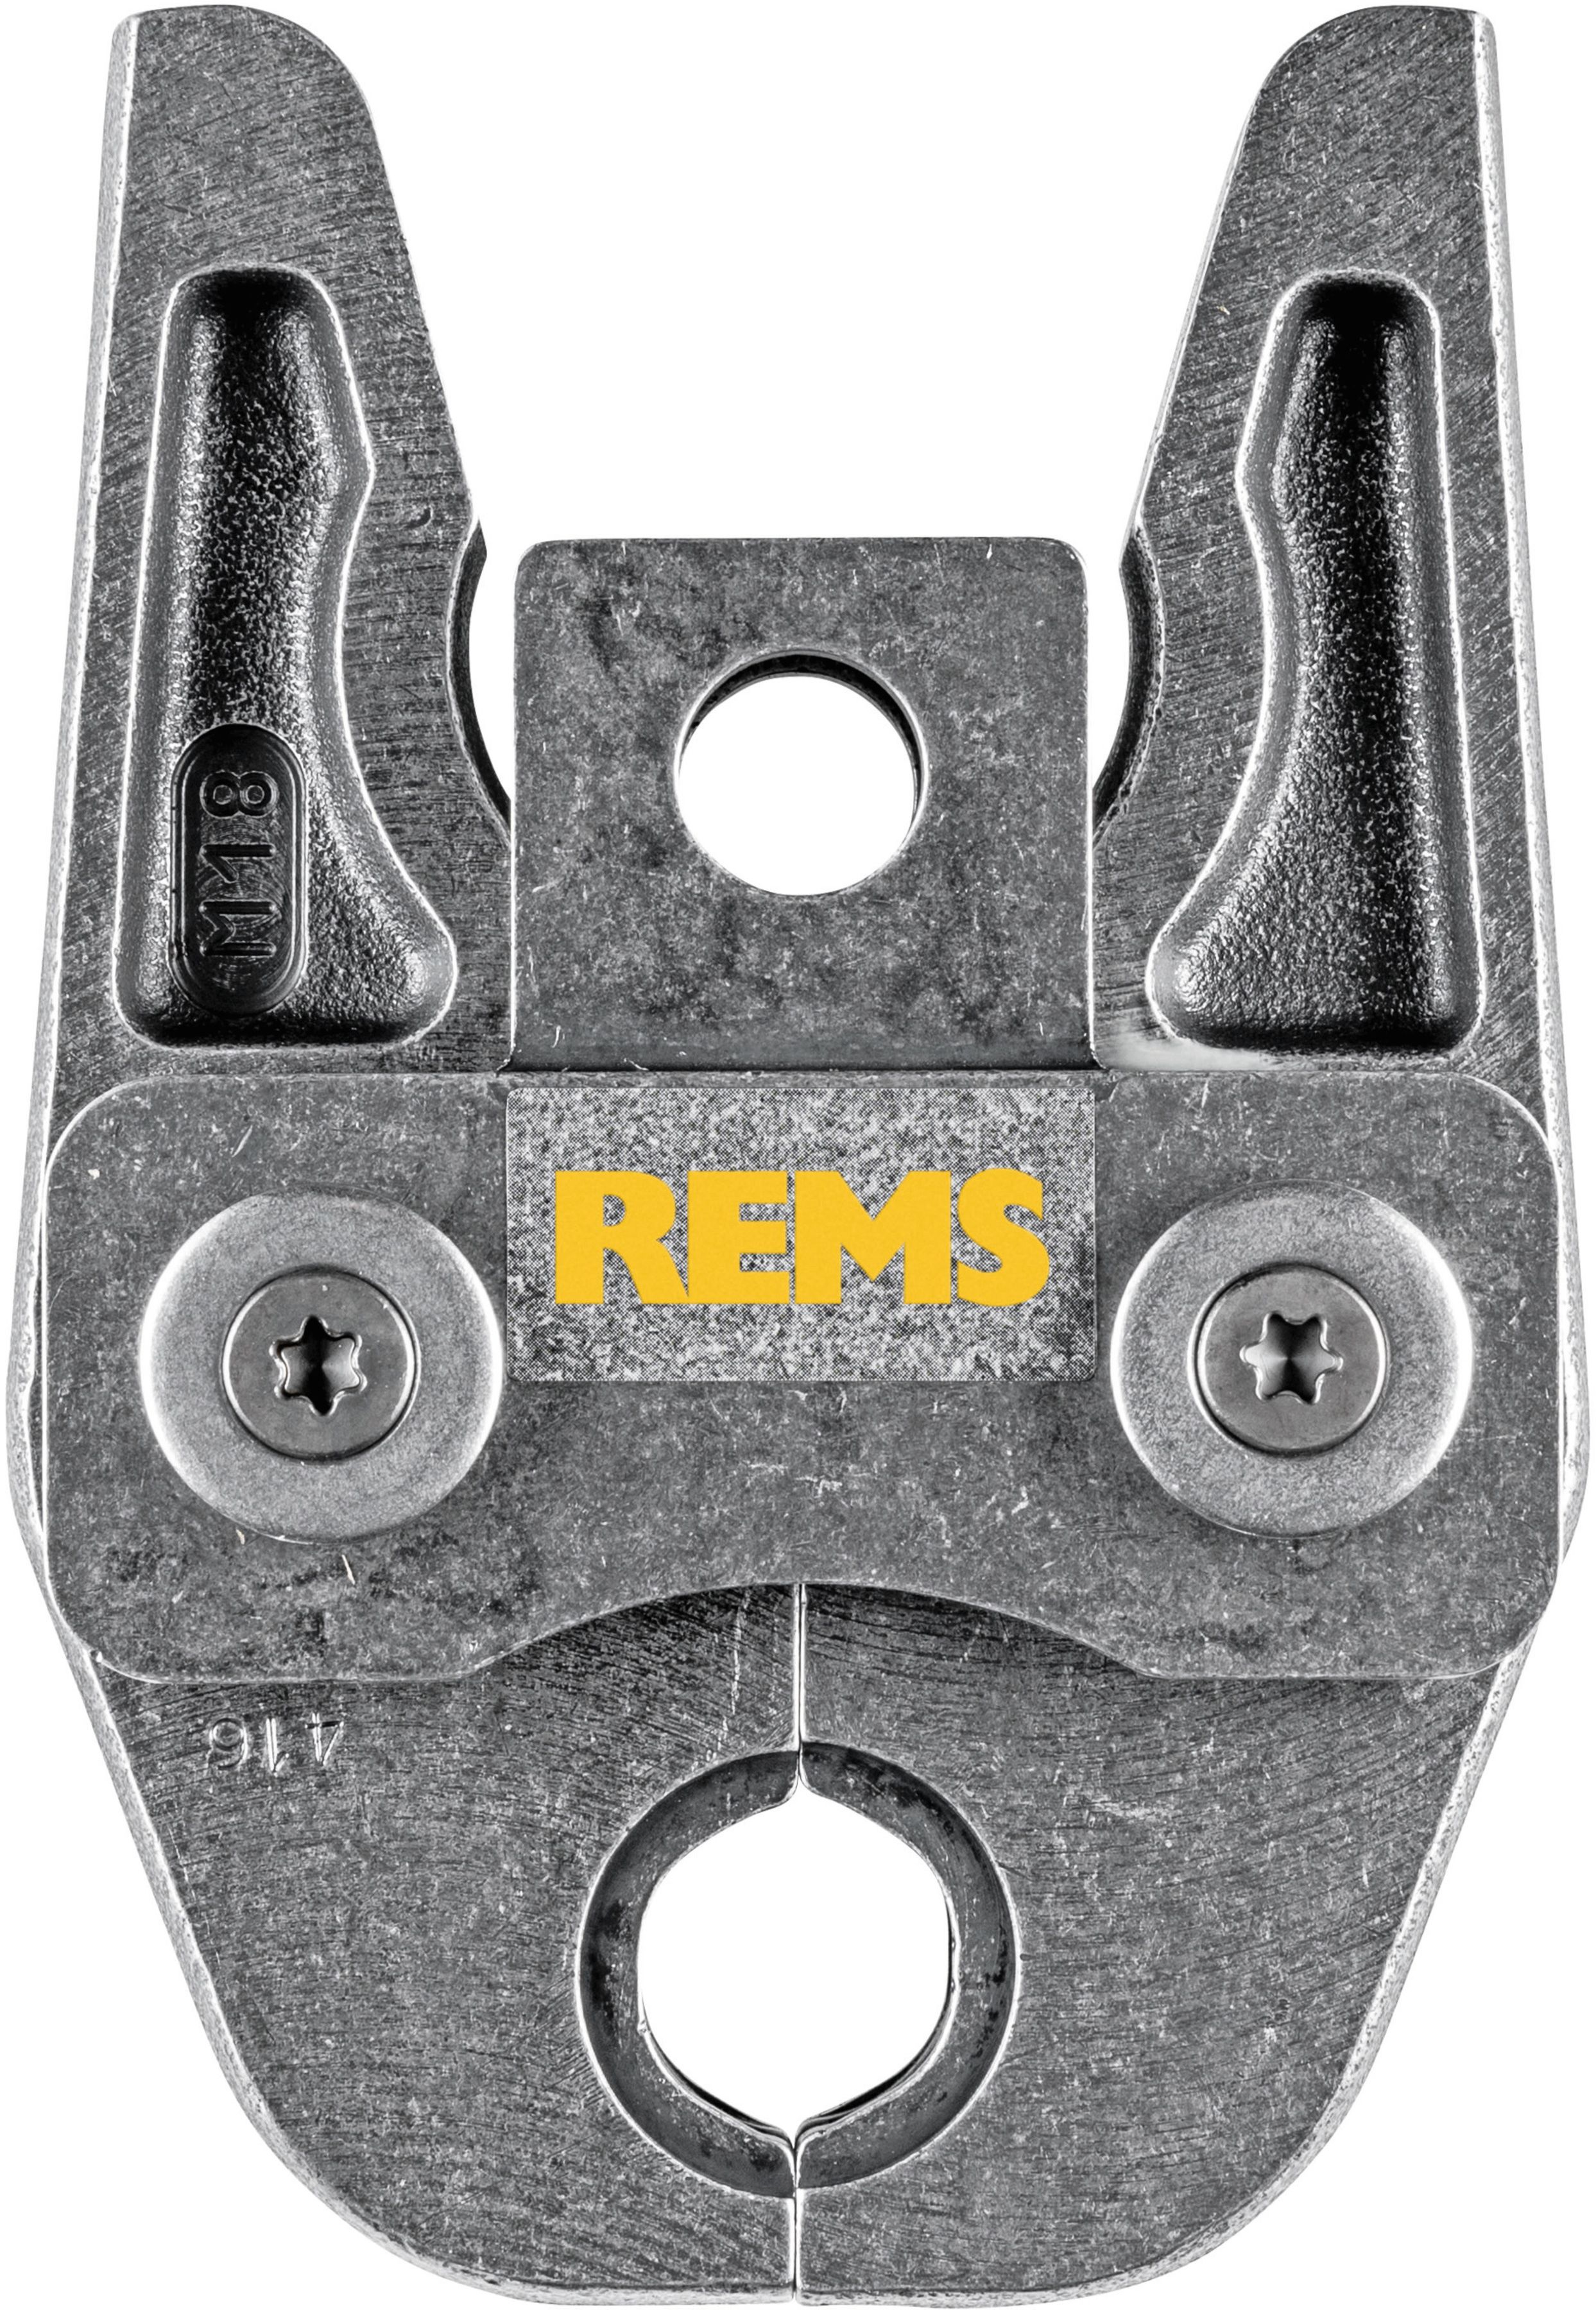 REMS Presszange 570120, M18 - Sanitärwerkzeuge